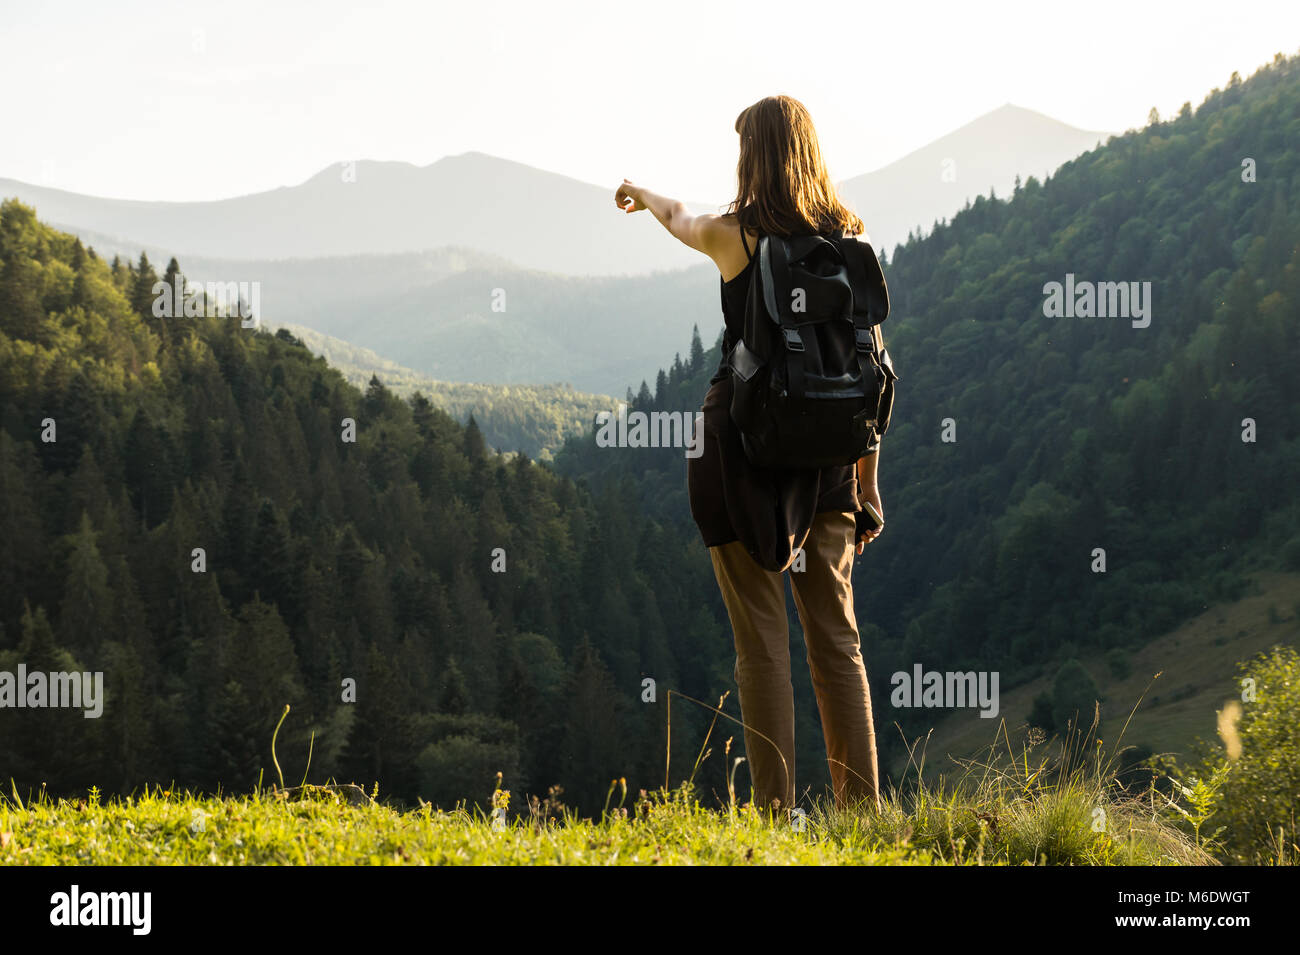 Les jeunes peuplements backpacker haut de la colline dans les Carpates ukrainiennes et des points de sommet de destination Banque D'Images